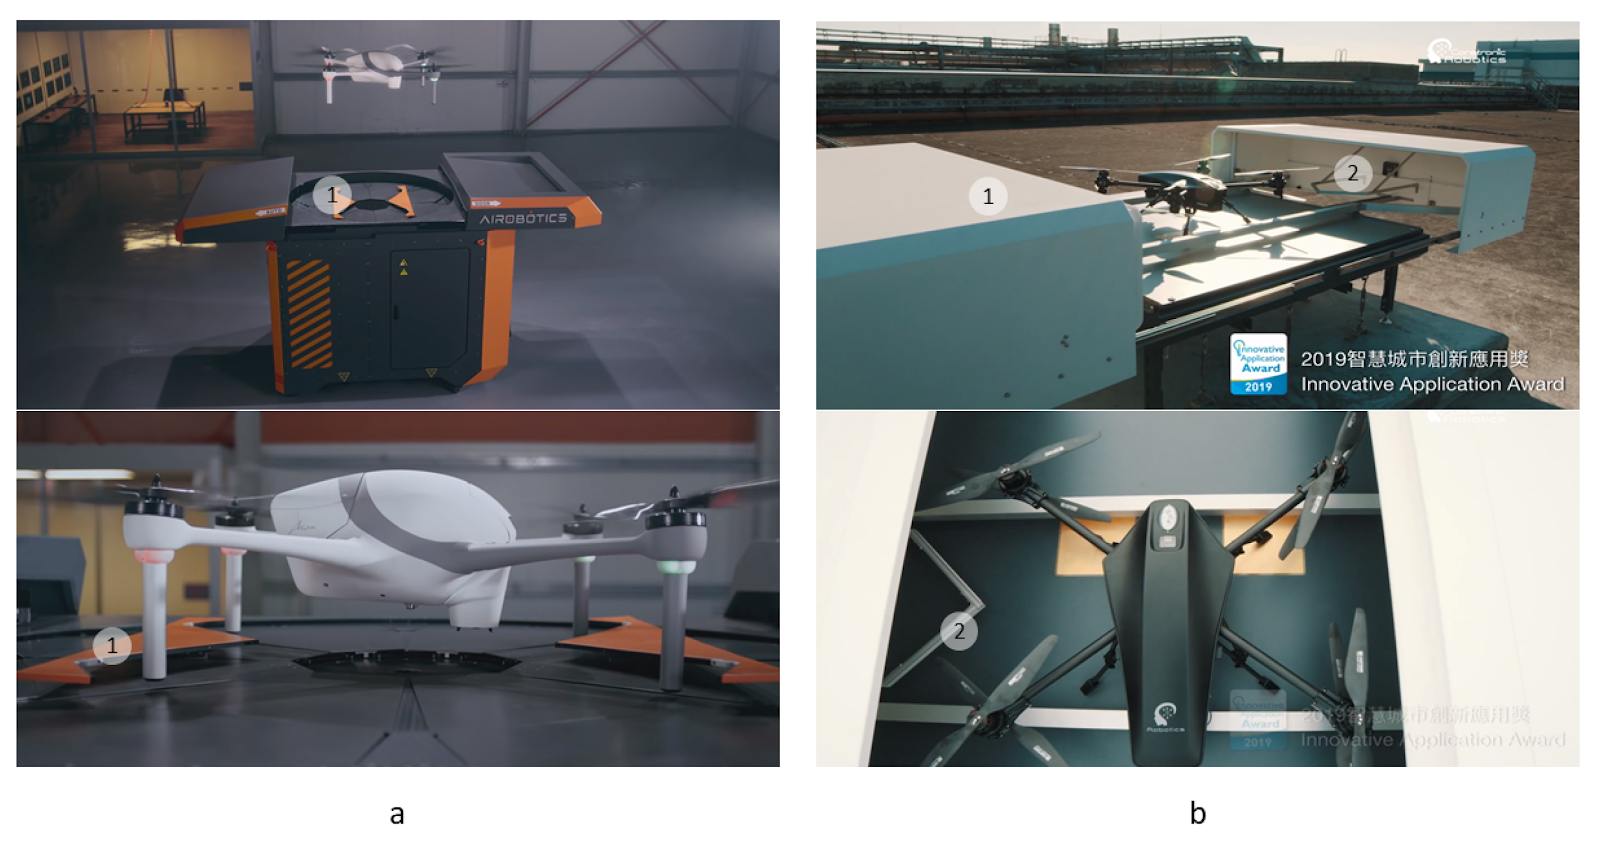 Примеры платформ для БПЛА с V- и W-образными толкателями. (a), станция Airobotics с параллельными W-образными толкателями (1); (b), станция Coretronic Intelligent Robotics (CIRC) с V-образными толкателями (2), интегрированными с крышками (1)